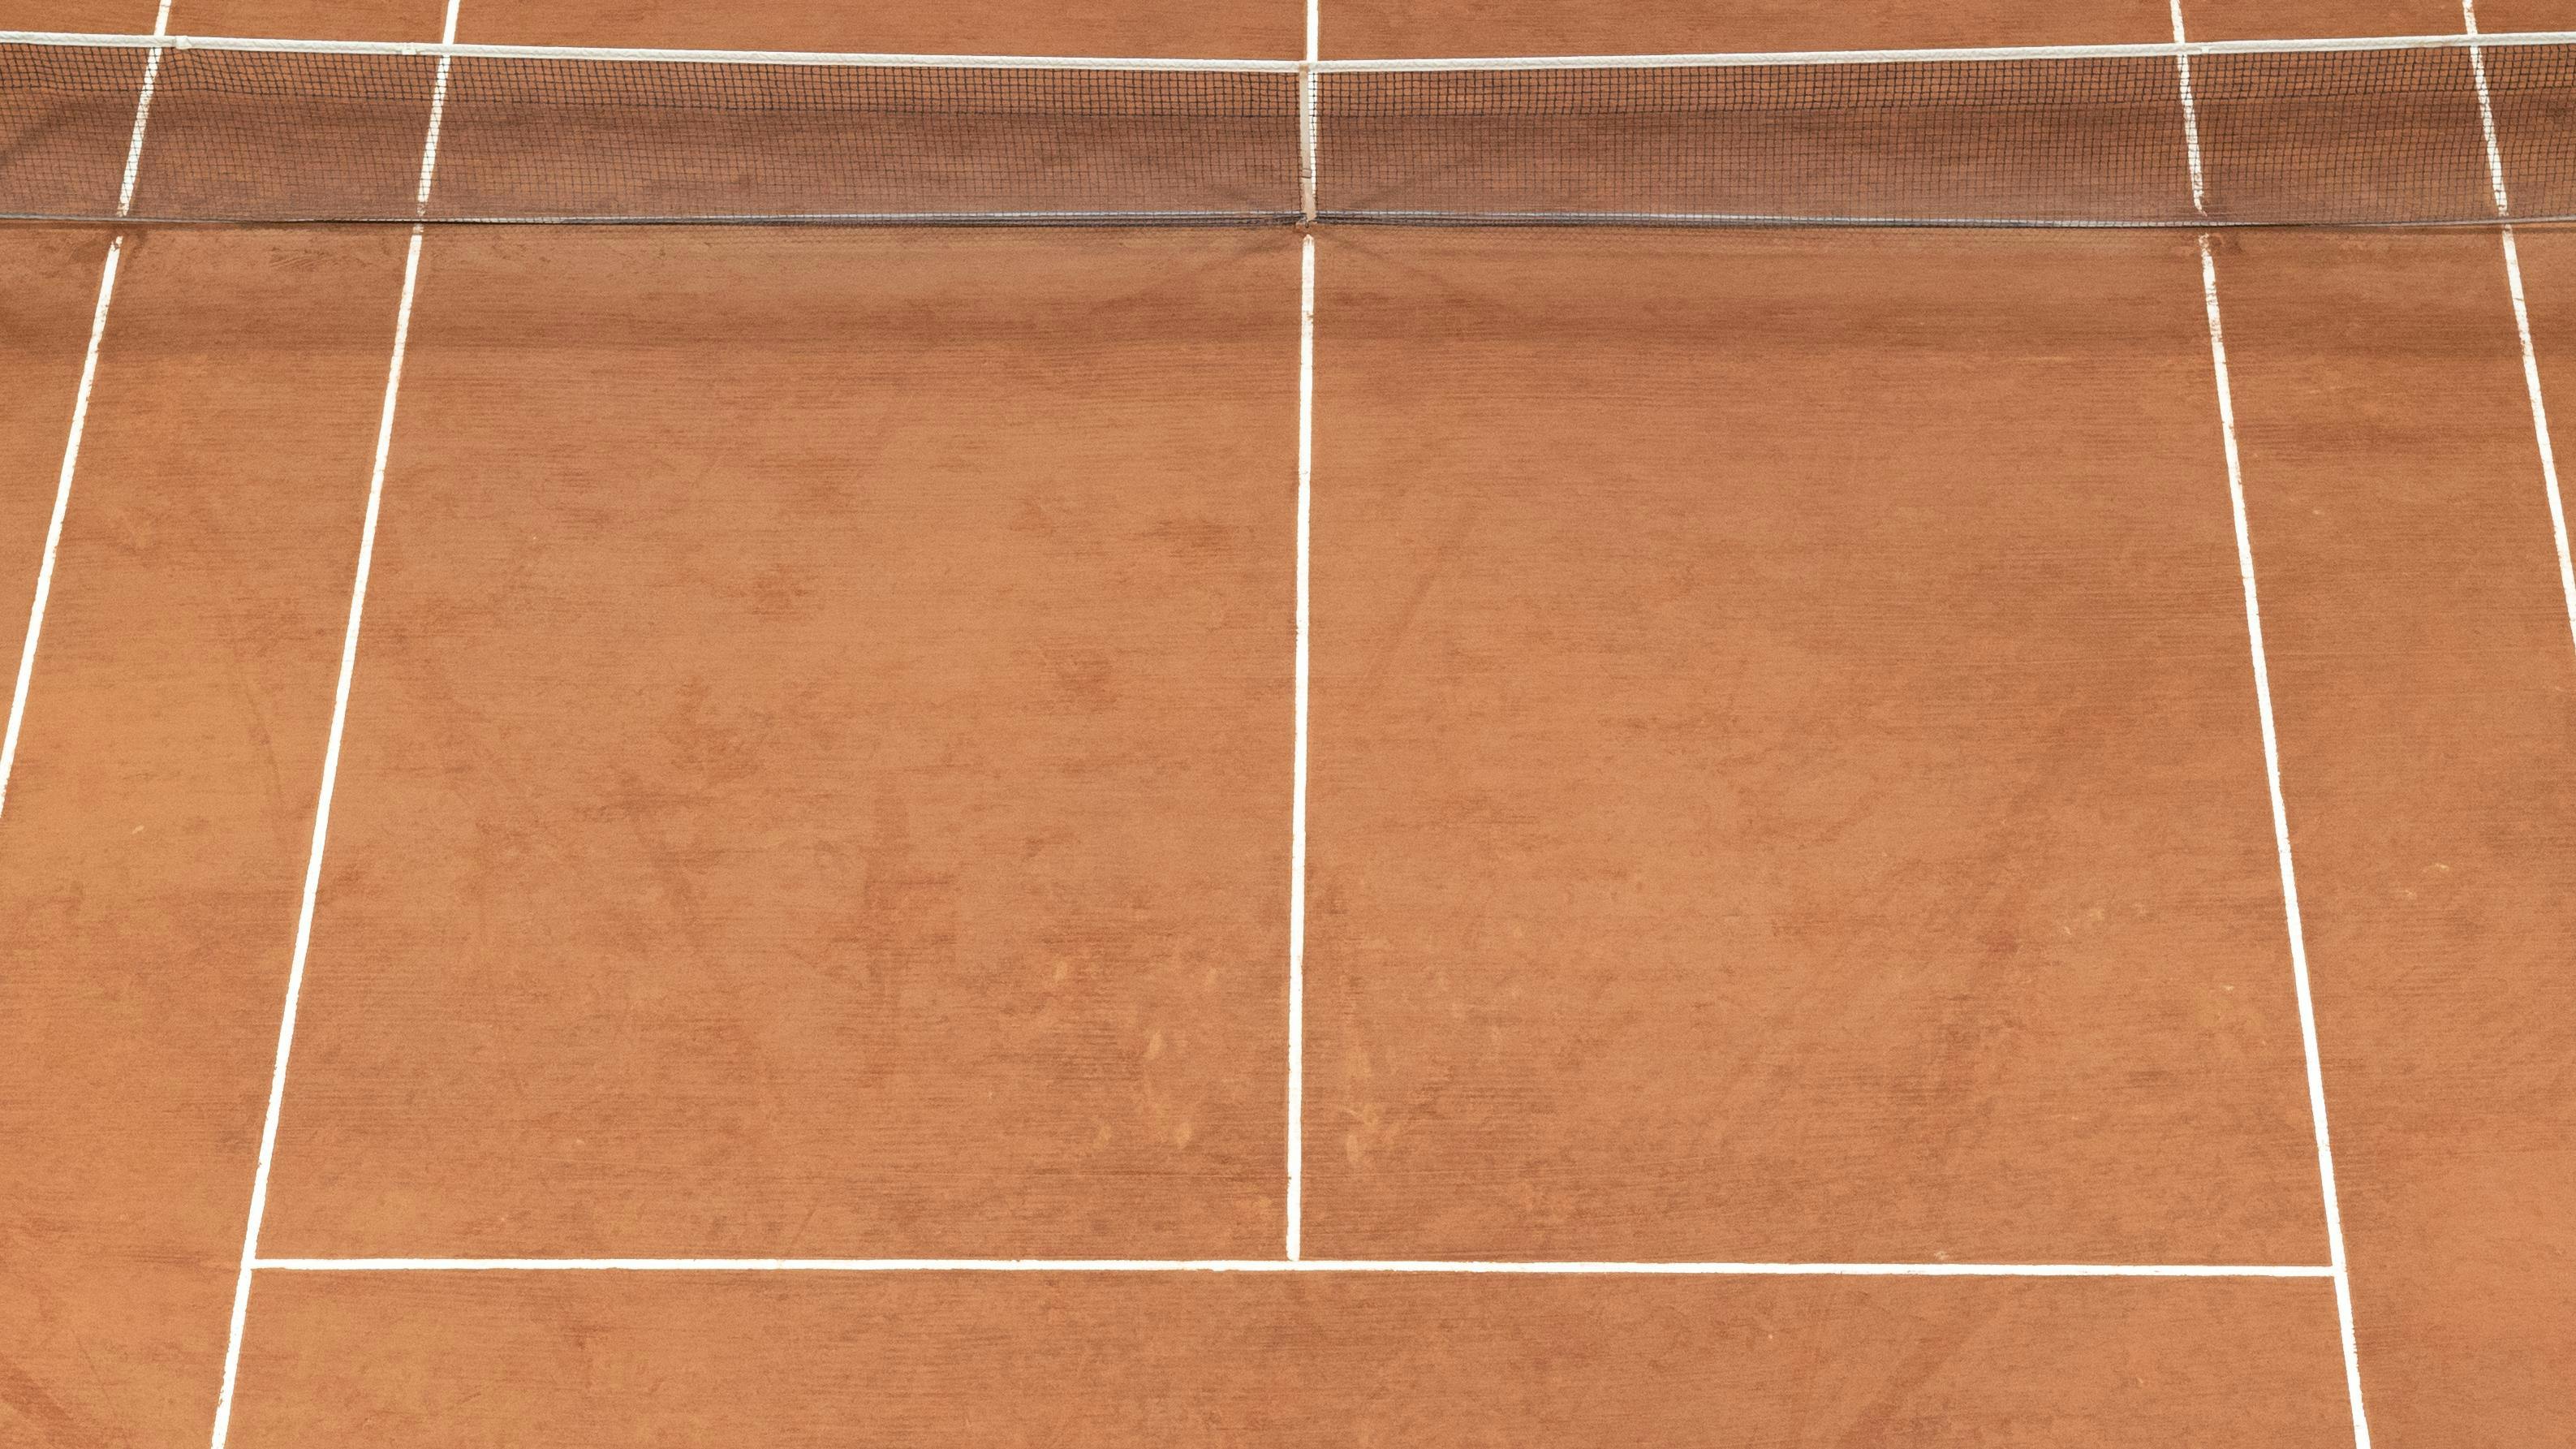 Les carrés de service n'en étaient pas au début de l'histoire du tennis.